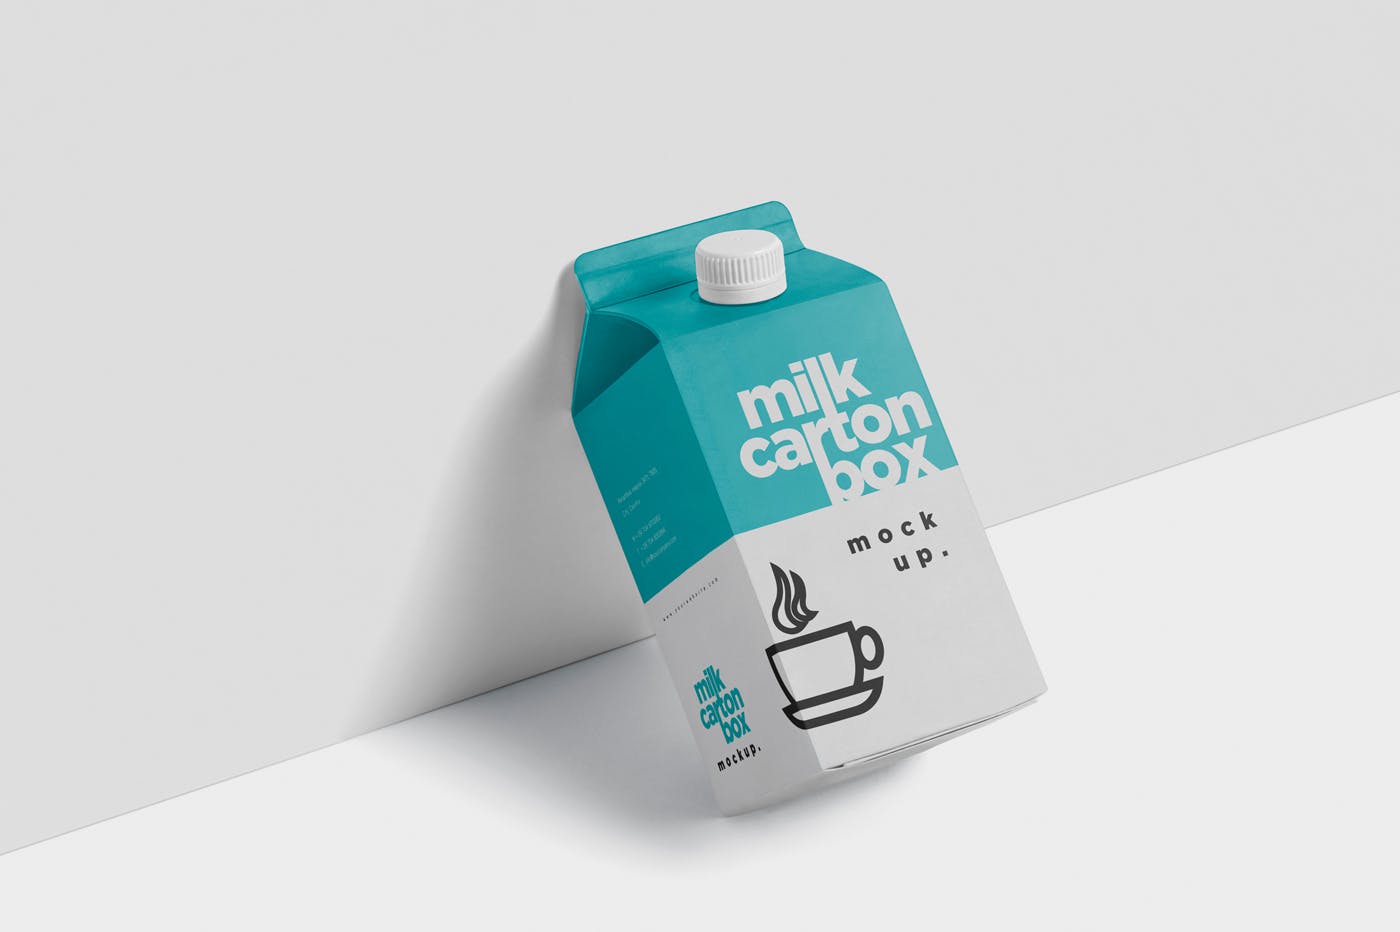 果汁/牛奶饮料纸盒包装效果图样机 Juice – Milk Mockup in 500ml Carton Box插图(3)